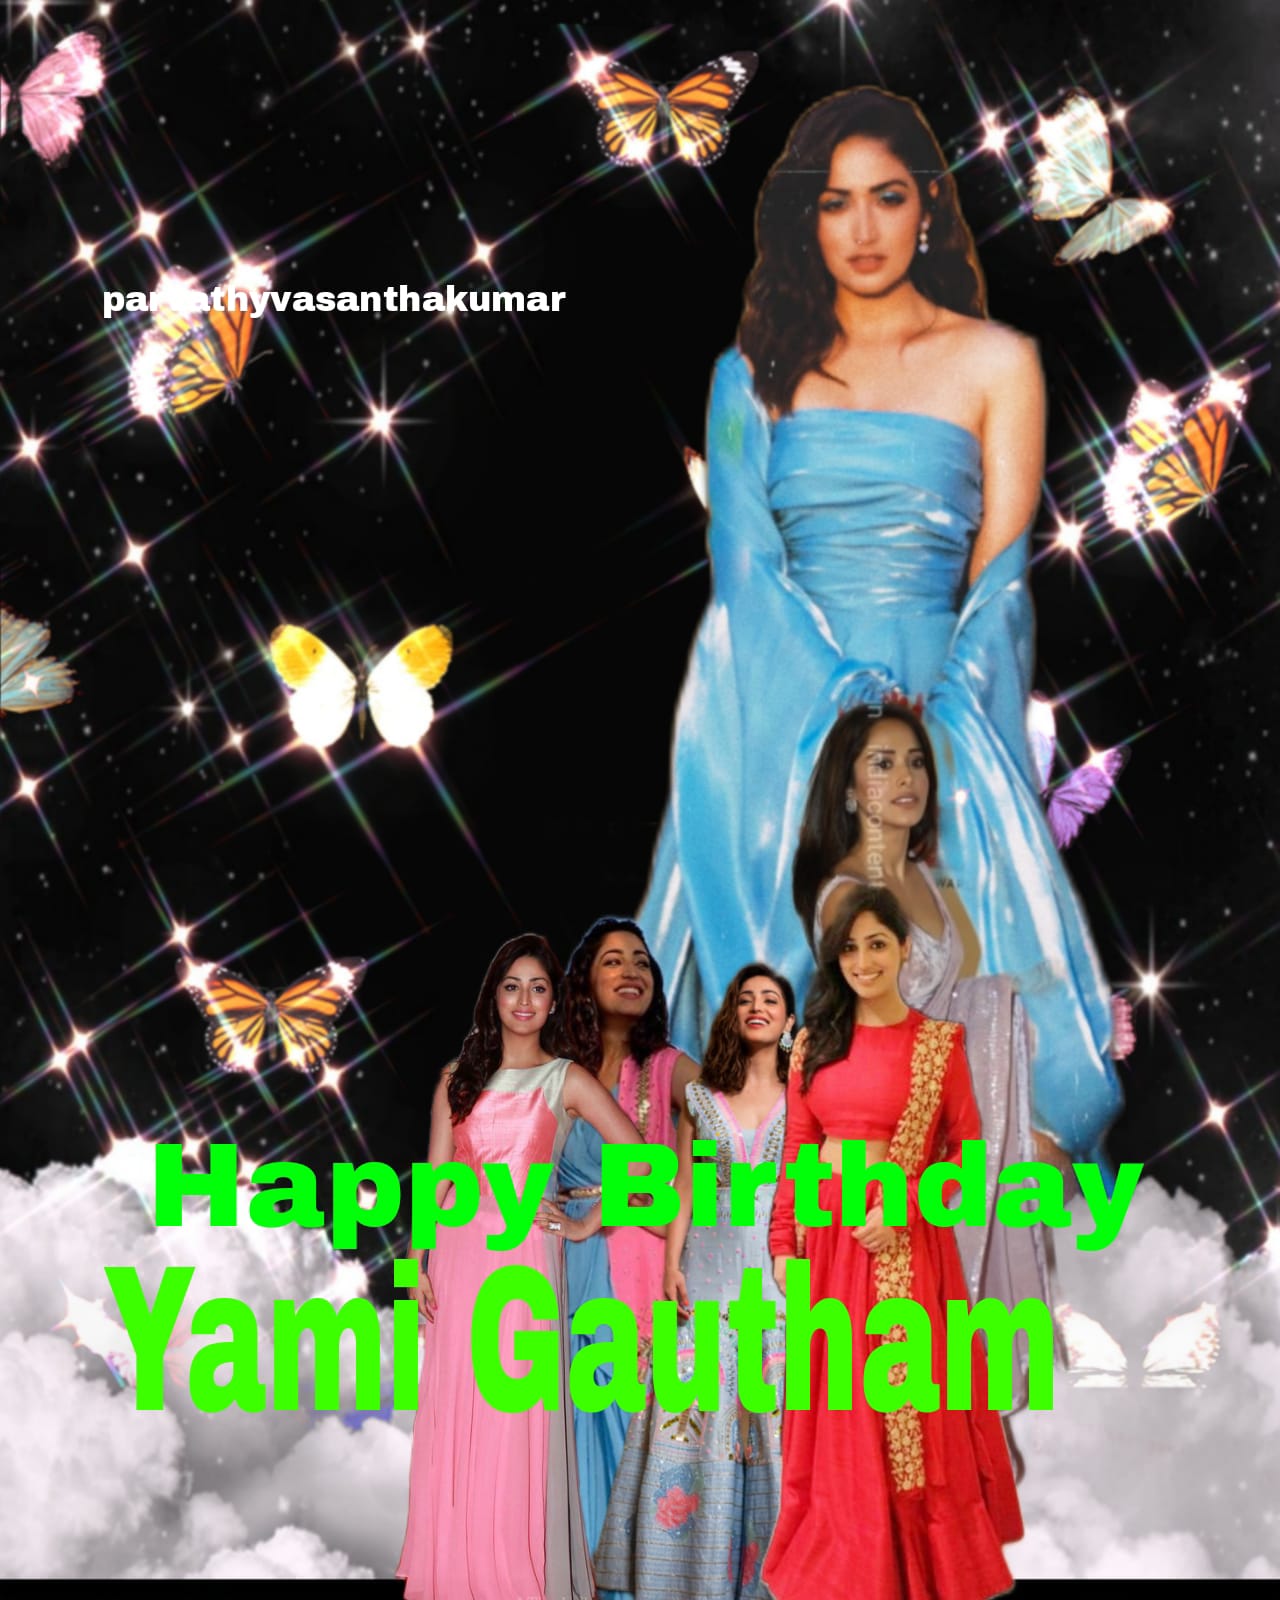 Happy birthday
Yami gautam   